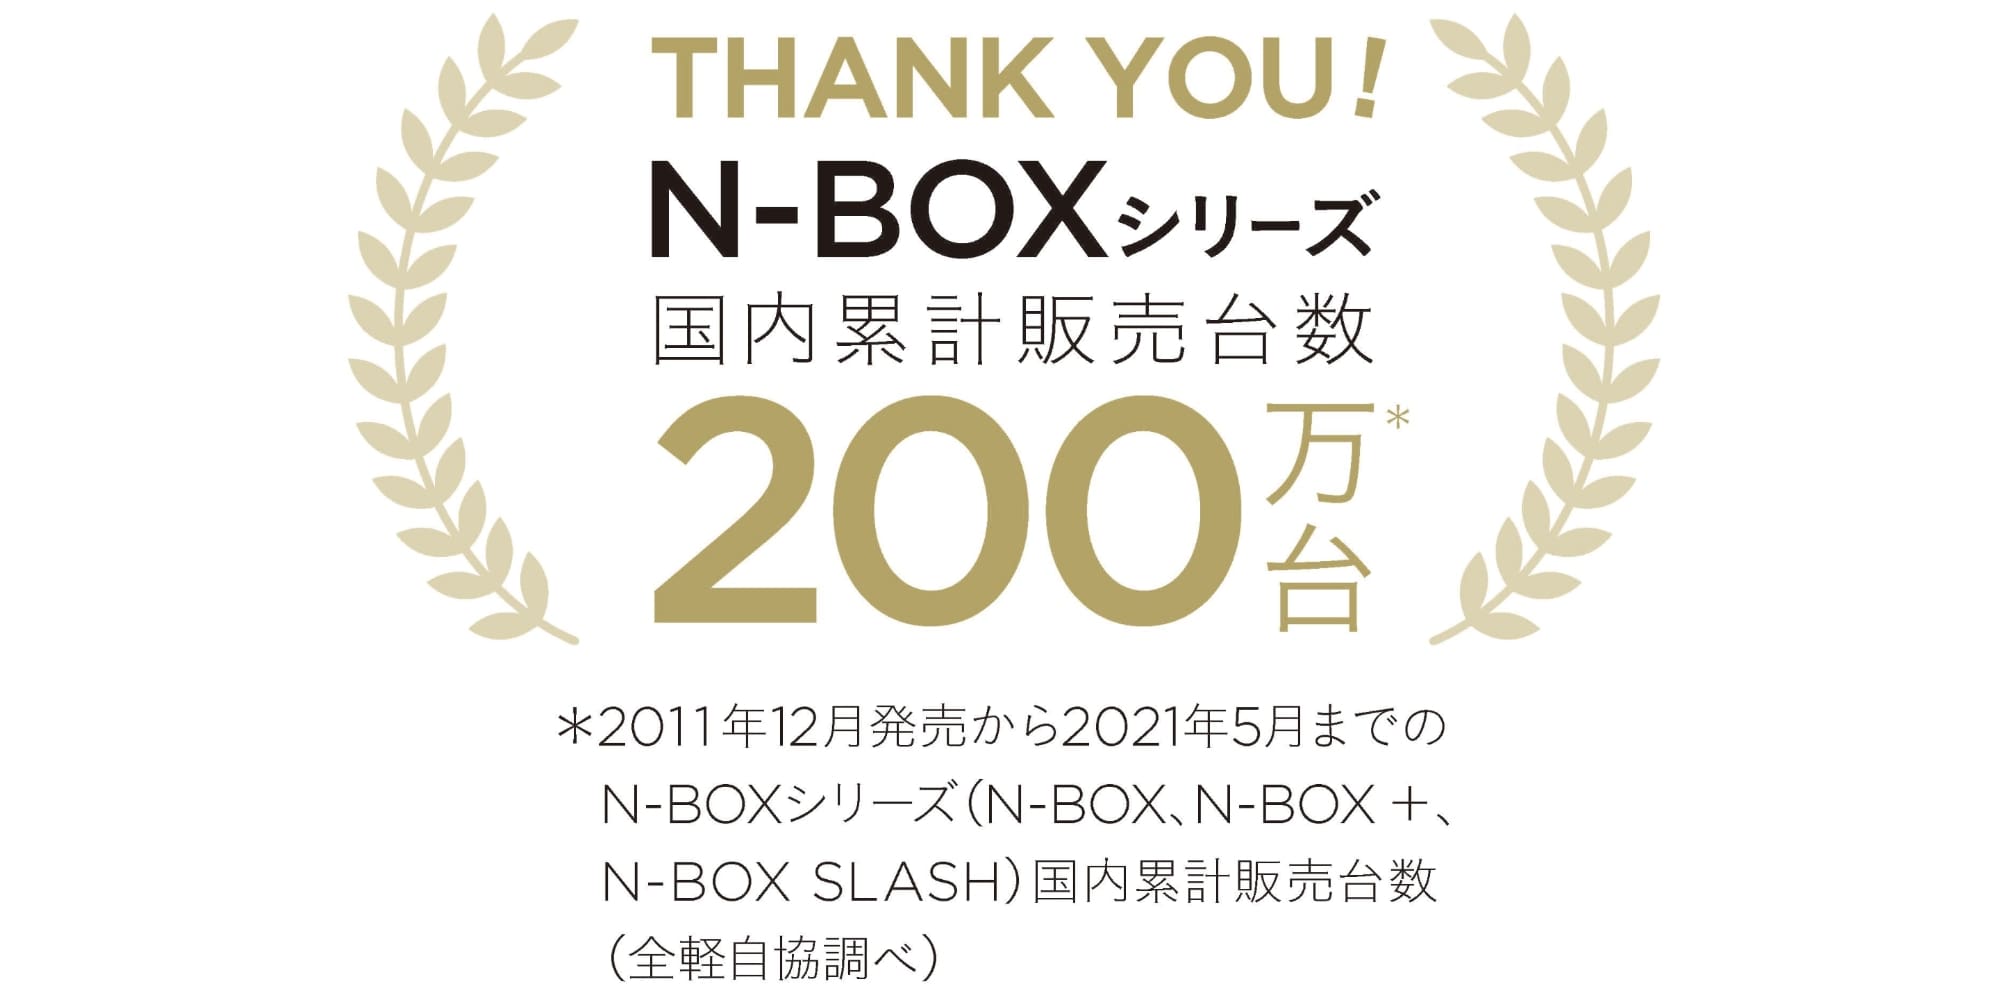 「N-BOX」シリーズの累計販売台数が200万台を突破